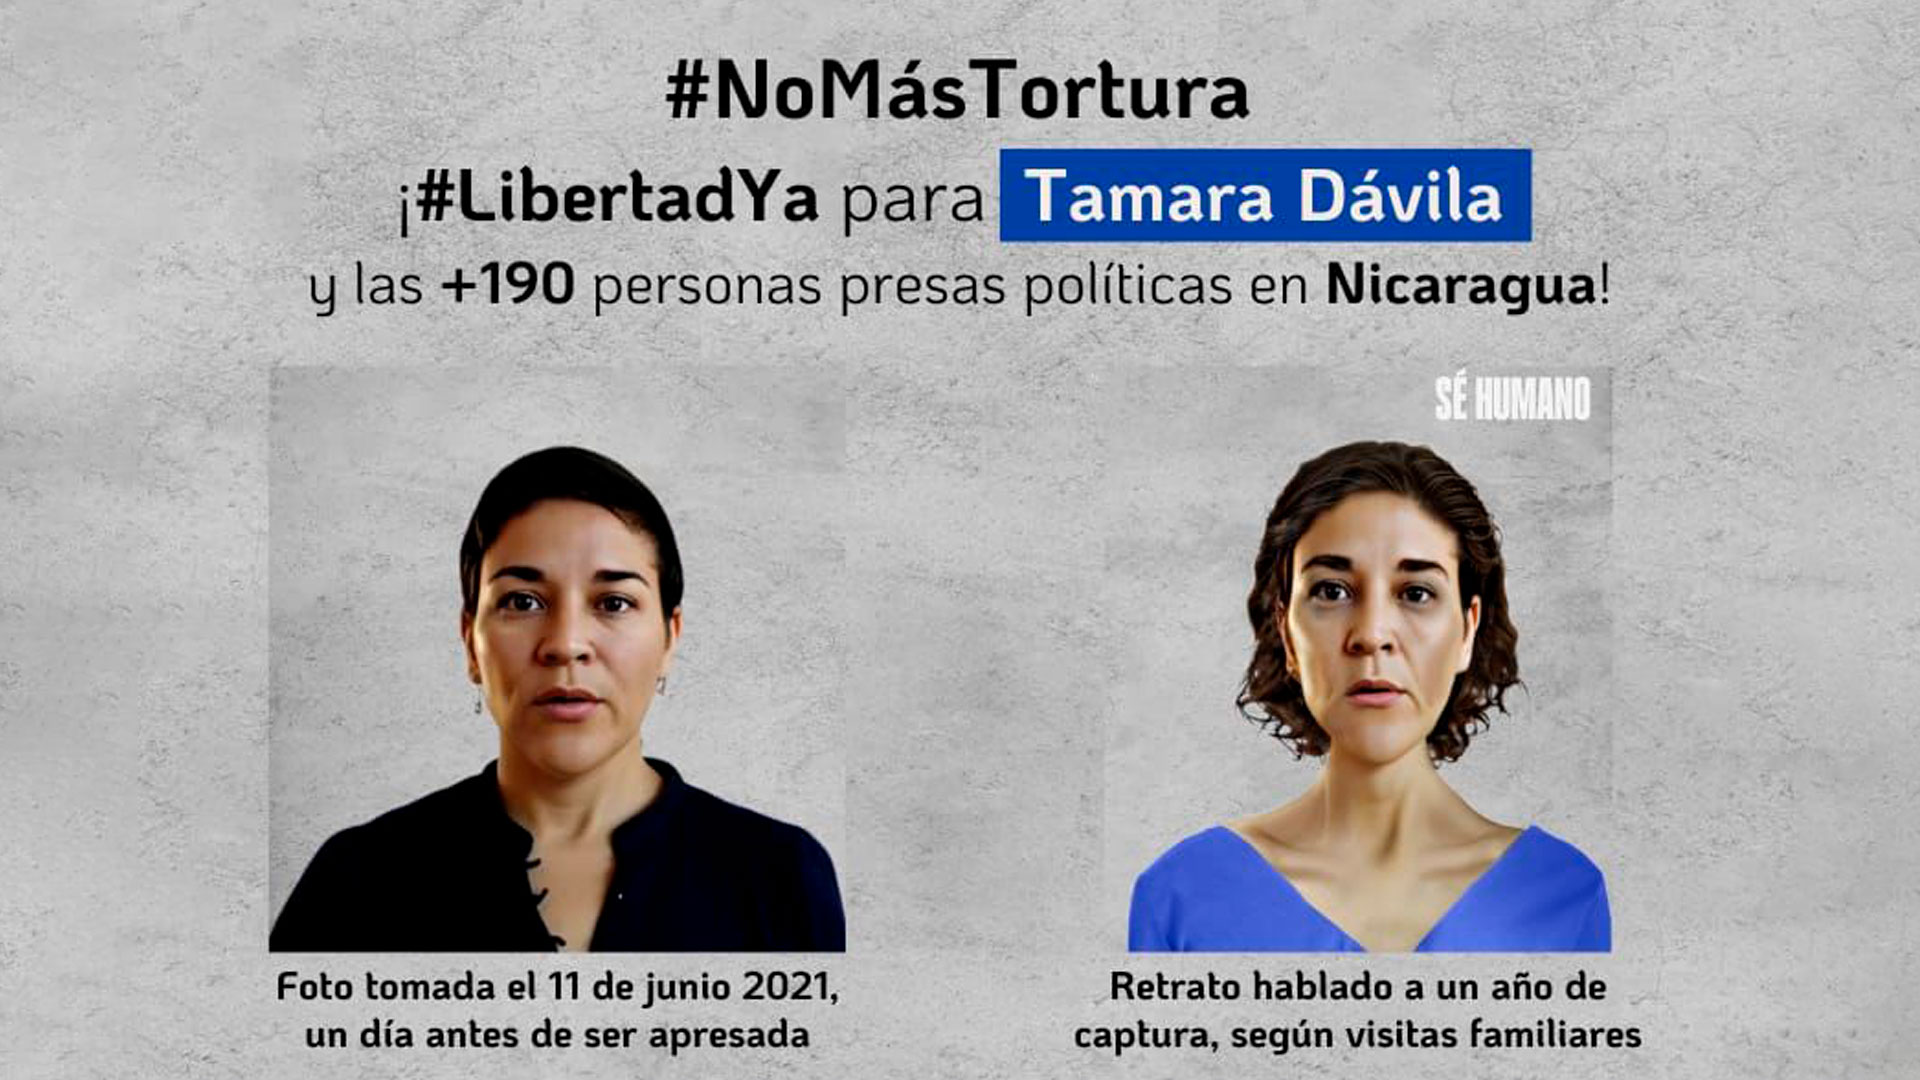 Alerta de la oposición de Nicaragua sobre la situación de Tamara Dávila